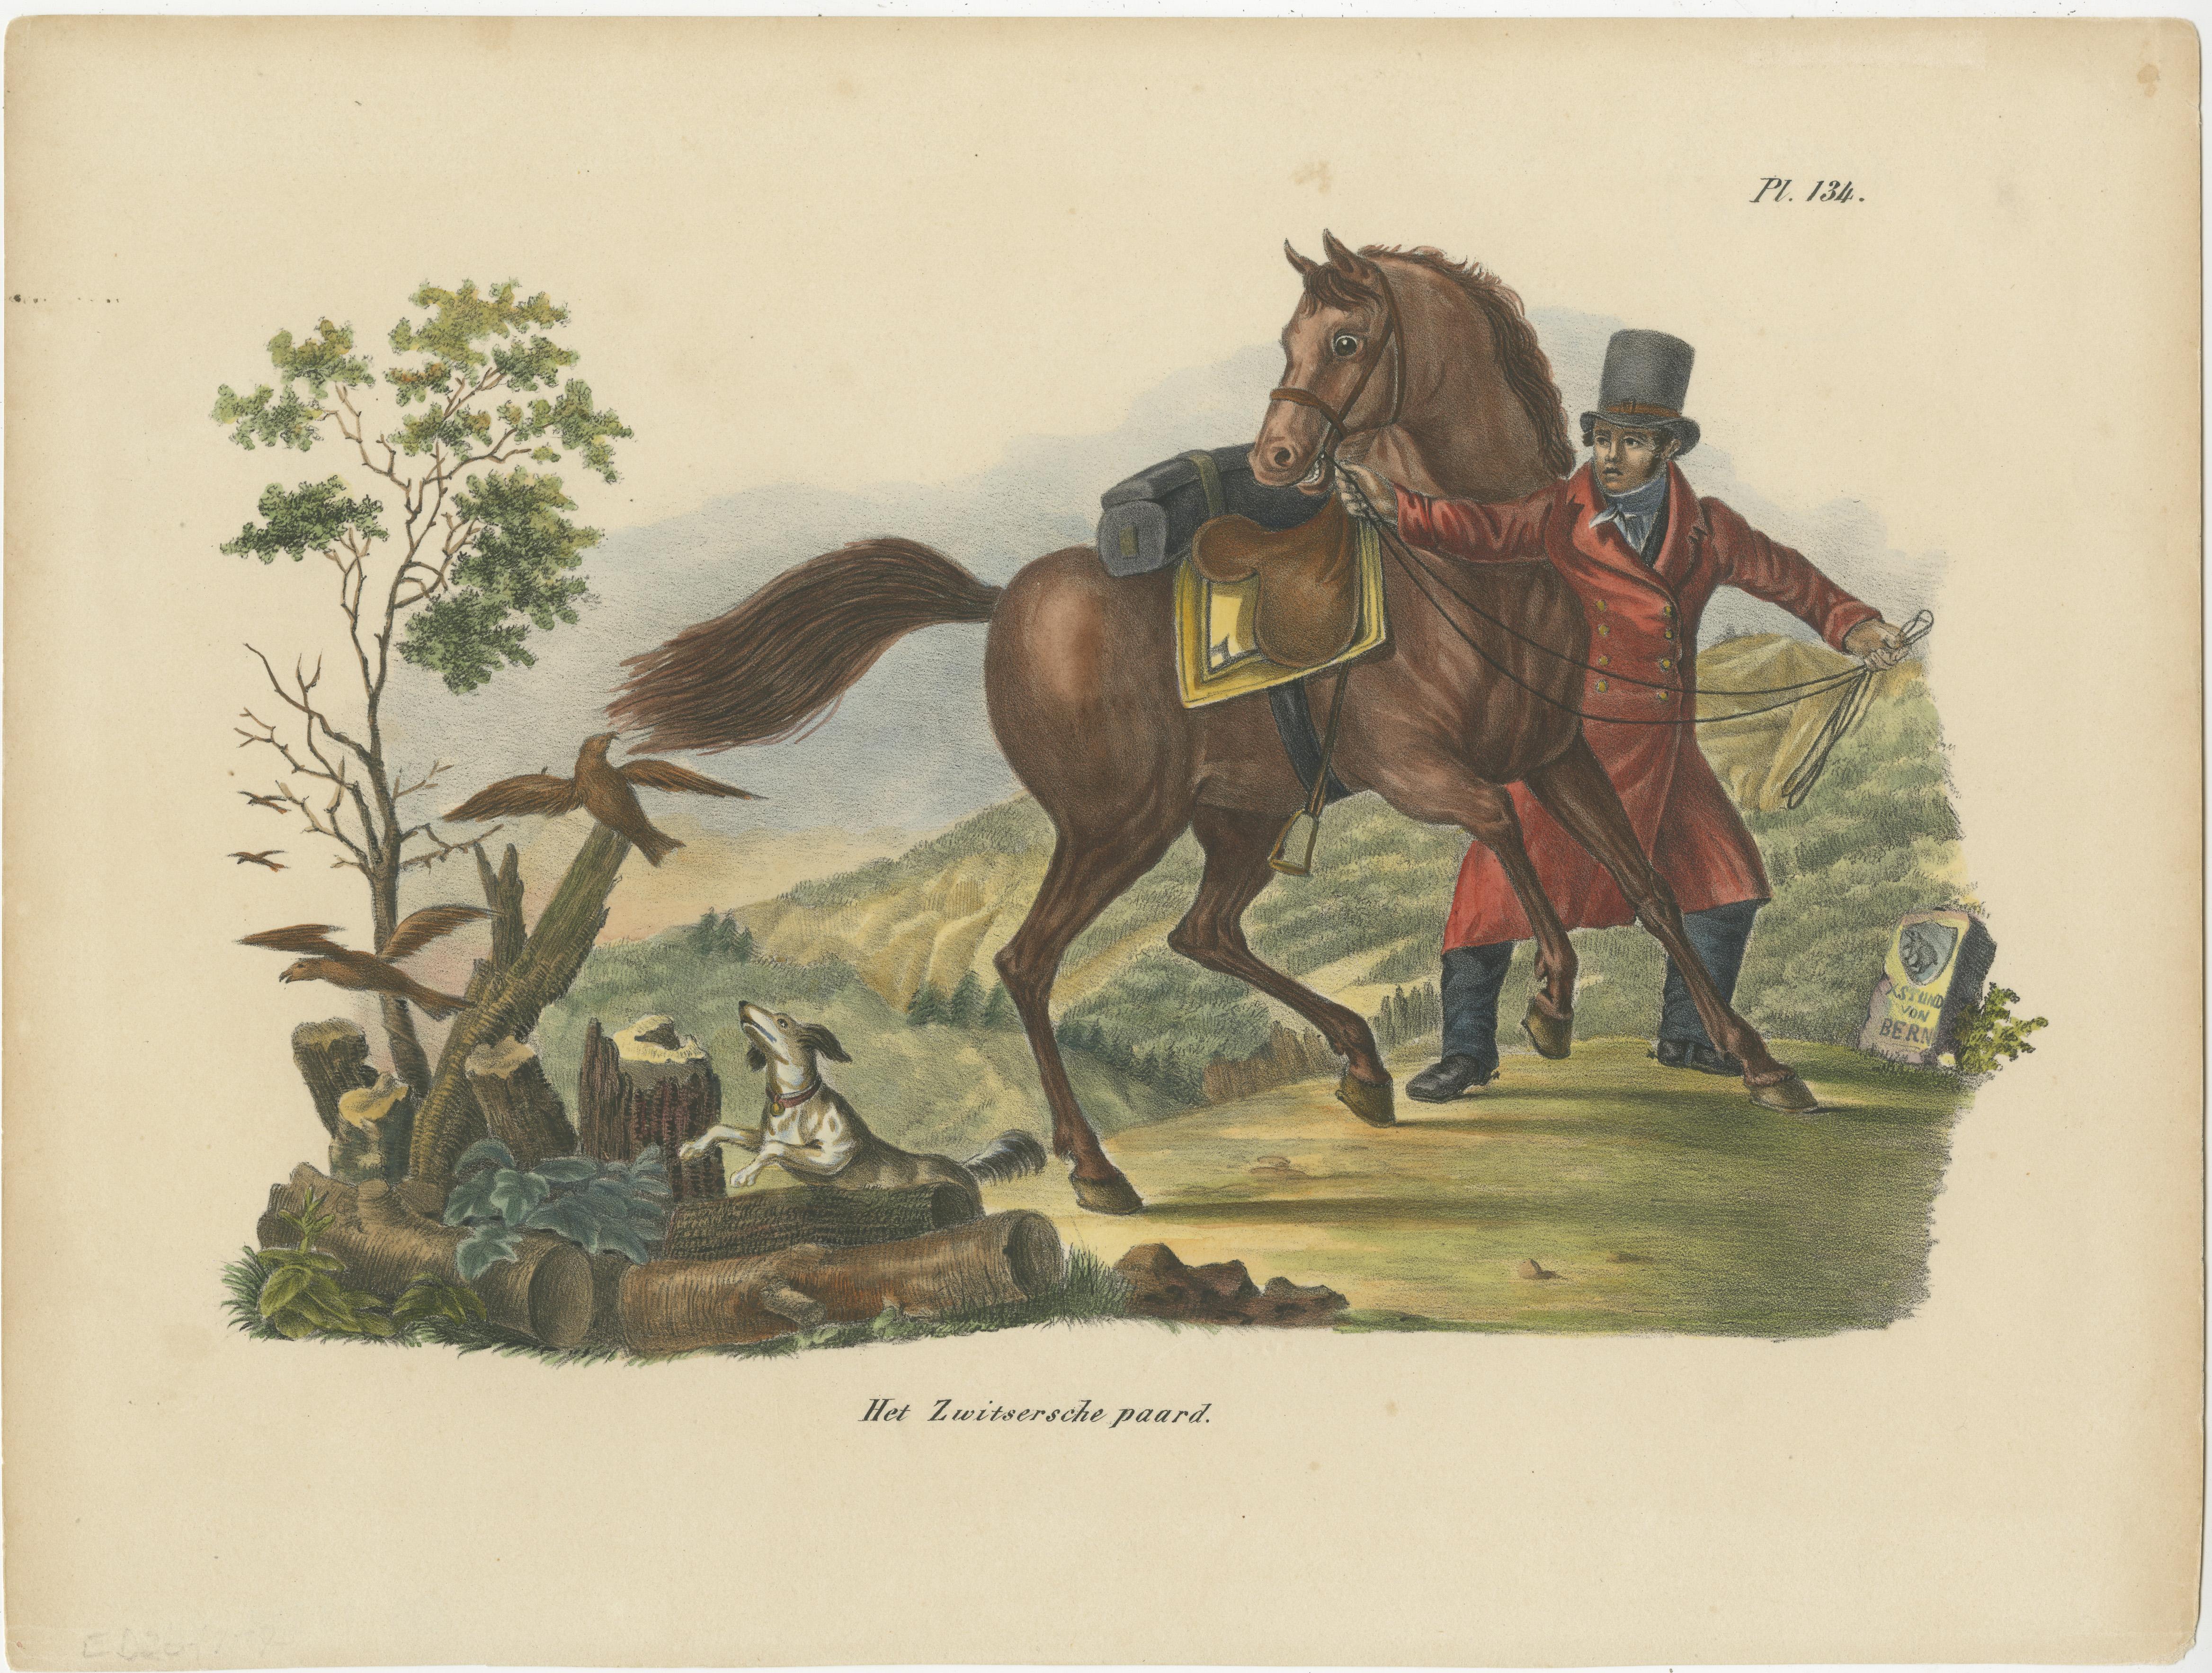 Antique print titled 'Het Zwitsersche paard'. Old hand colored print of a Swiss horse. This print originates from 'Volledige natuurlijke historie der zoogdieren: volgens de nieuwste onderzoekingen en ontdekkingen' by Heinrich Schinz. Published by